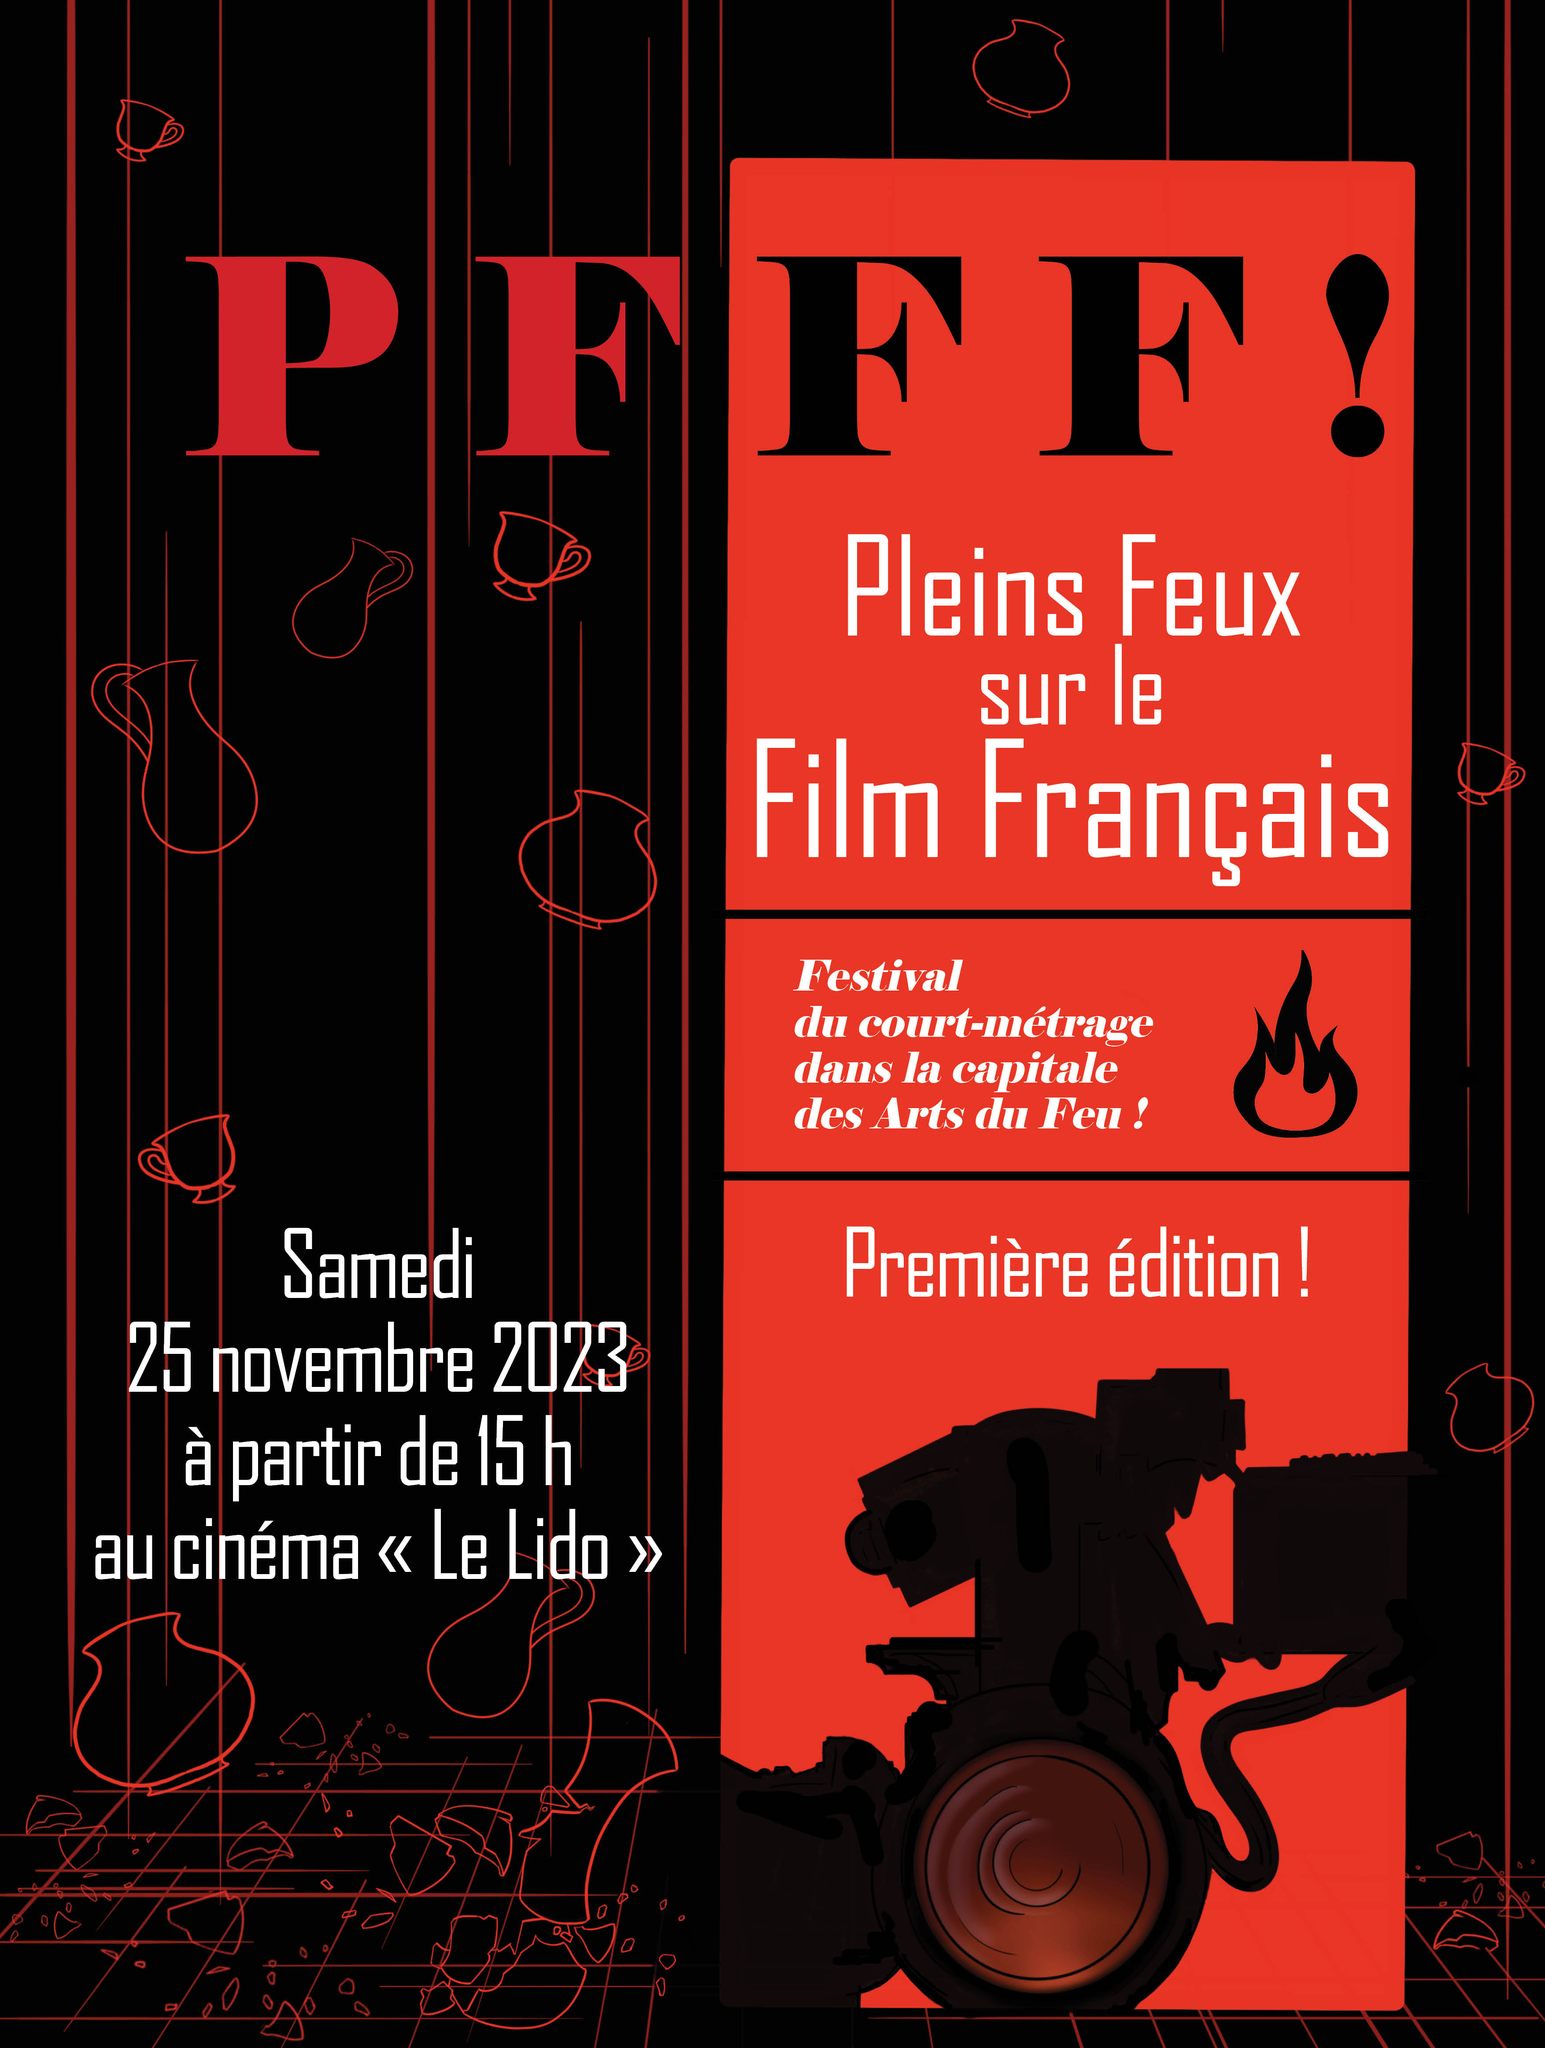 Festival PFFF Pleins Feux sur le Film Français, Limoges, avec Franck Linol parmi les membres du jury